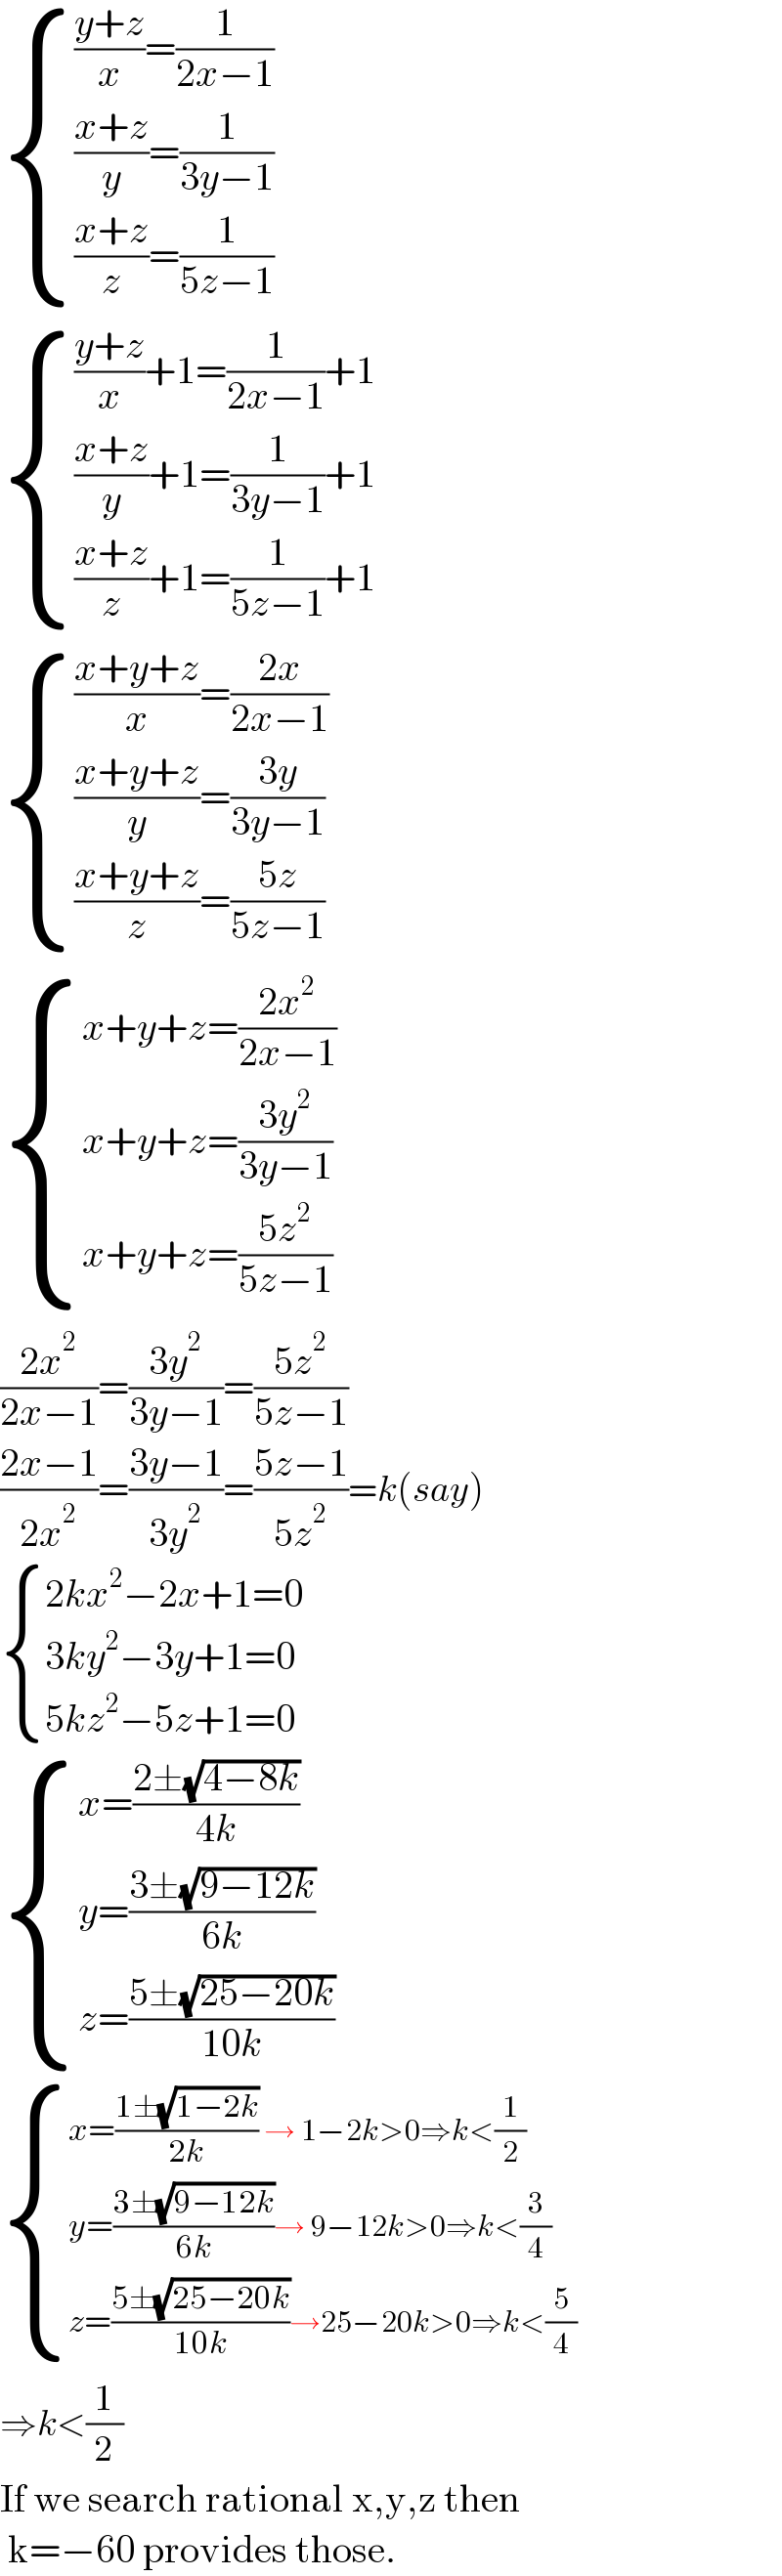  { ((((y+z)/x)=(1/(2x−1)))),((((x+z)/y)=(1/(3y−1)))),((((x+z)/z)=(1/(5z−1)))) :}       { ((((y+z)/x)+1=(1/(2x−1))+1)),((((x+z)/y)+1=(1/(3y−1))+1)),((((x+z)/z)+1=(1/(5z−1))+1)) :}       { ((((x+y+z)/x)=((2x)/(2x−1)))),((((x+y+z)/y)=((3y)/(3y−1)))),((((x+y+z)/z)=((5z)/(5z−1)))) :}       { ((x+y+z=((2x^2 )/(2x−1)))),((x+y+z=((3y^2 )/(3y−1))        )),((x+y+z=((5z^2 )/(5z−1)))) :}      ((2x^2 )/(2x−1))=((3y^2 )/(3y−1))=((5z^2 )/(5z−1))  ((2x−1)/(2x^2 ))=((3y−1)/(3y^2 ))=((5z−1)/(5z^2 ))=k(say)   { ((2kx^2 −2x+1=0)),((3ky^2 −3y+1=0)),((5kz^2 −5z+1=0)) :}      { ((x=((2±(√(4−8k)))/(4k)))),((y=((3±(√(9−12k)))/(6k)))),((z=((5±(√(25−20k)))/(10k)))) :}    { ((x=((1±(√(1−2k)))/(2k)) → 1−2k>0⇒k<(1/2))),((y=((3±(√(9−12k)))/(6k))→ 9−12k>0⇒k<(3/4))),((z=((5±(√(25−20k)))/(10k))→25−20k>0⇒k<(5/4))) :}   ⇒k<(1/2)  If we search rational x,y,z then   k=−60 provides those.  